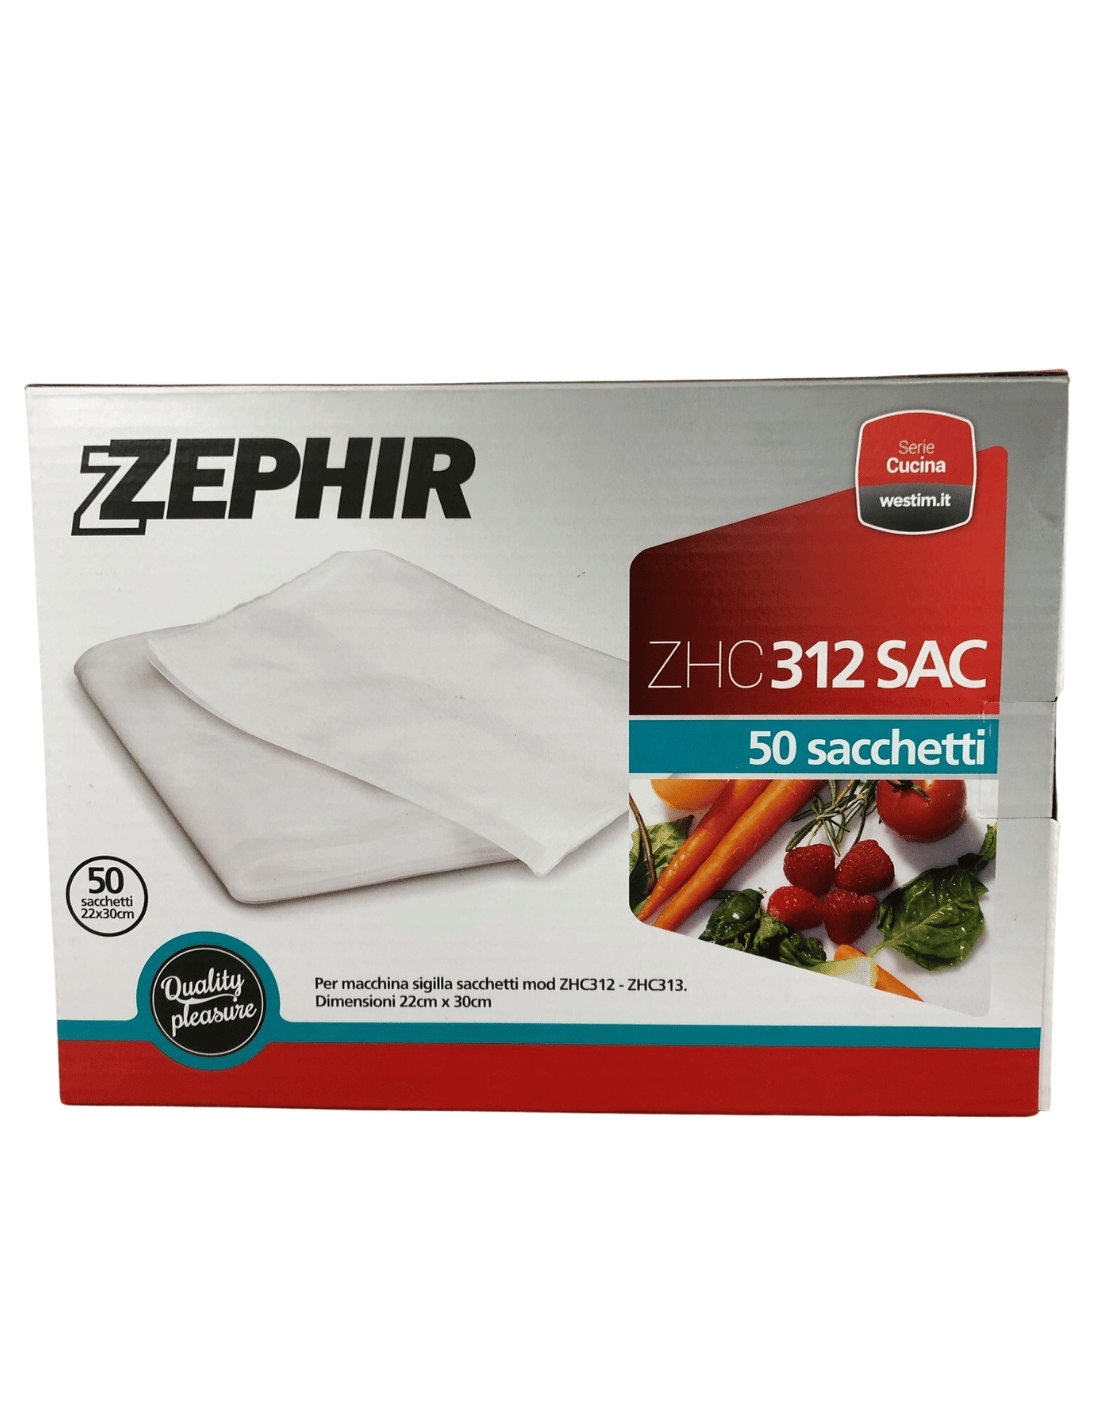 Box da 50 sacchetti per macchina sigilla sacchetti Zephir ZHC313